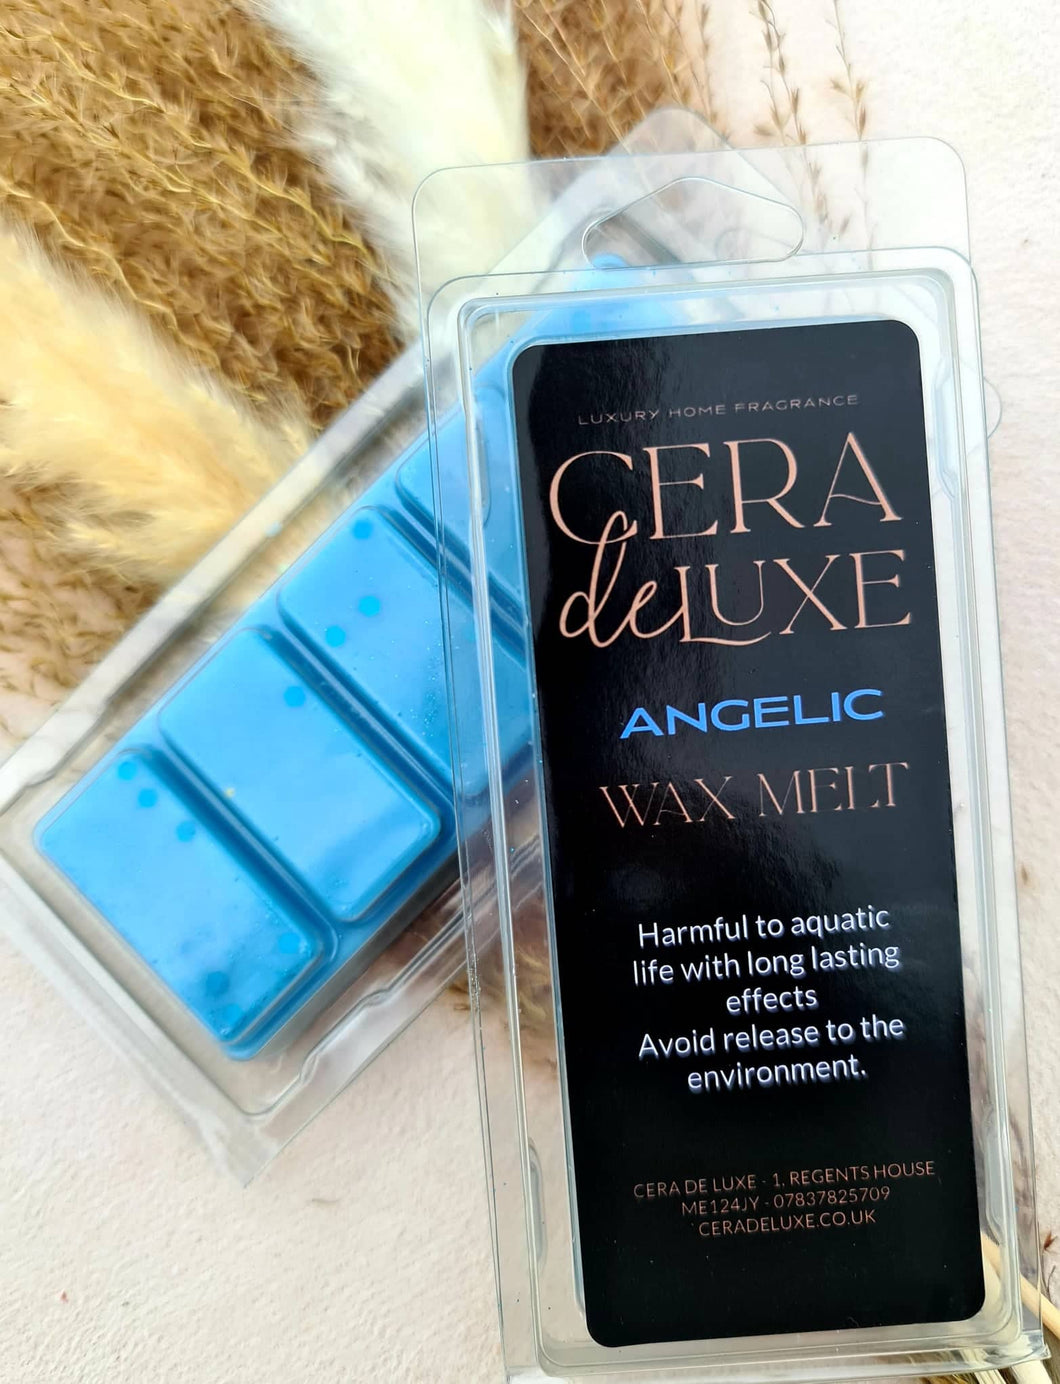 ANGELIC - Cera De Luxe - Luxury Home Fragrance - VAT NO - 364 8279 59 